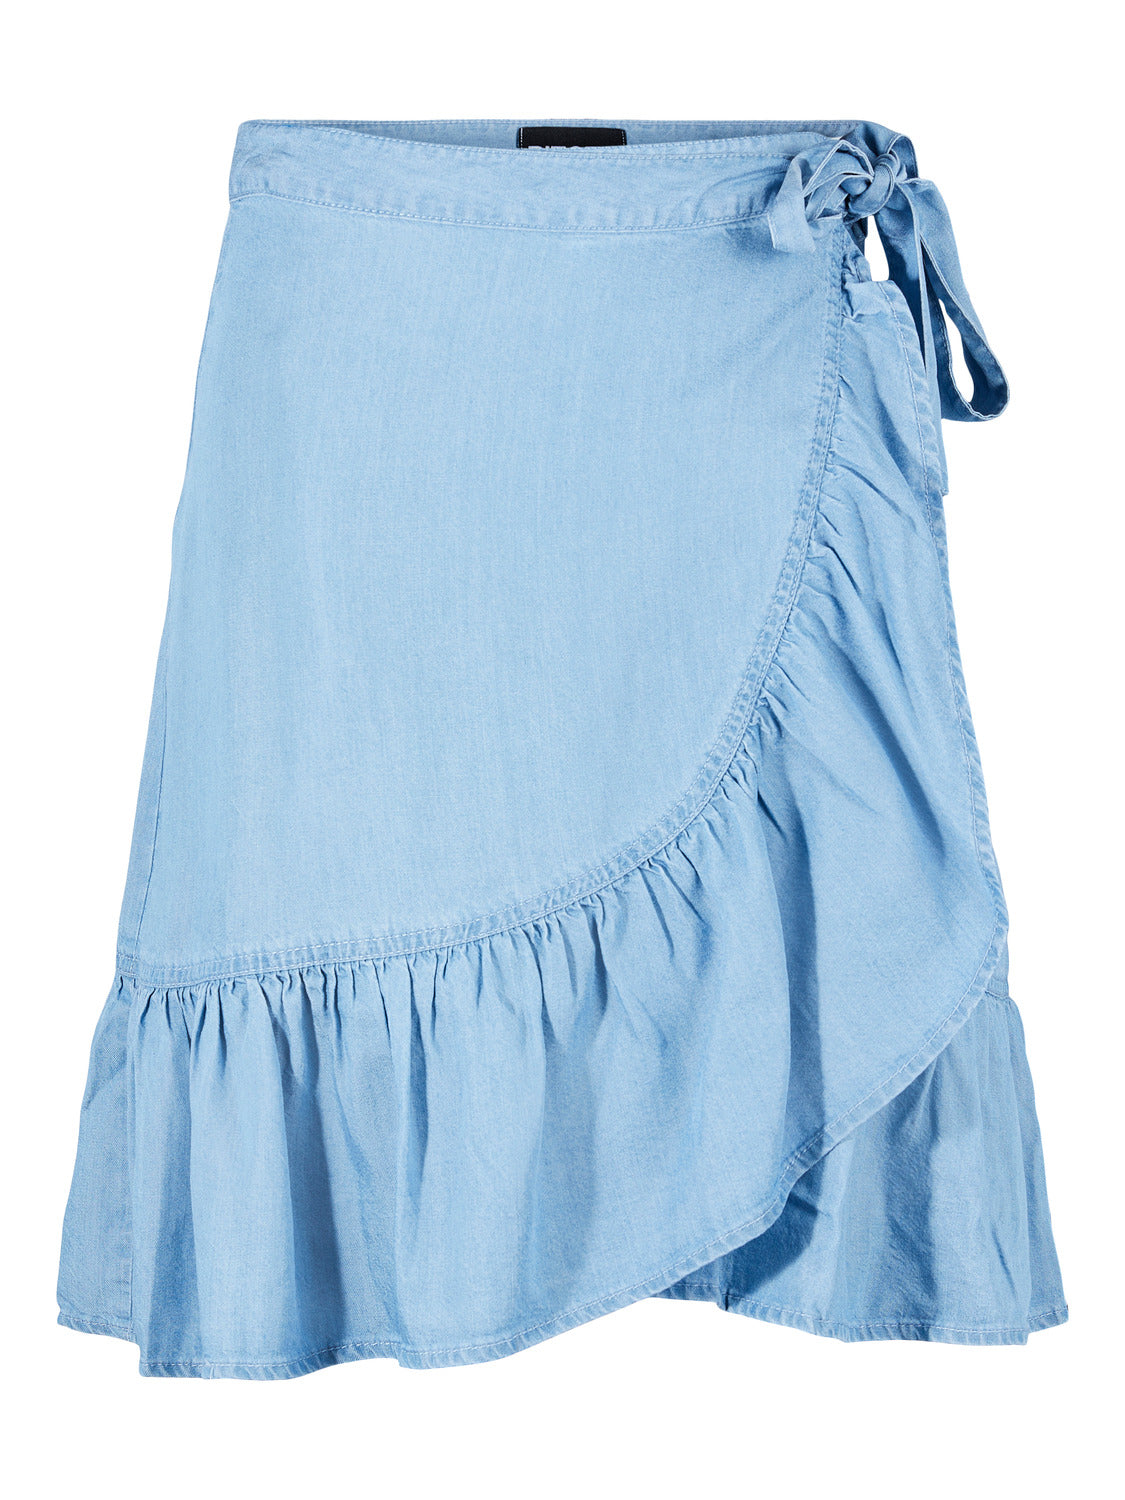 PCVILMA Skirt - Light Blue Denim